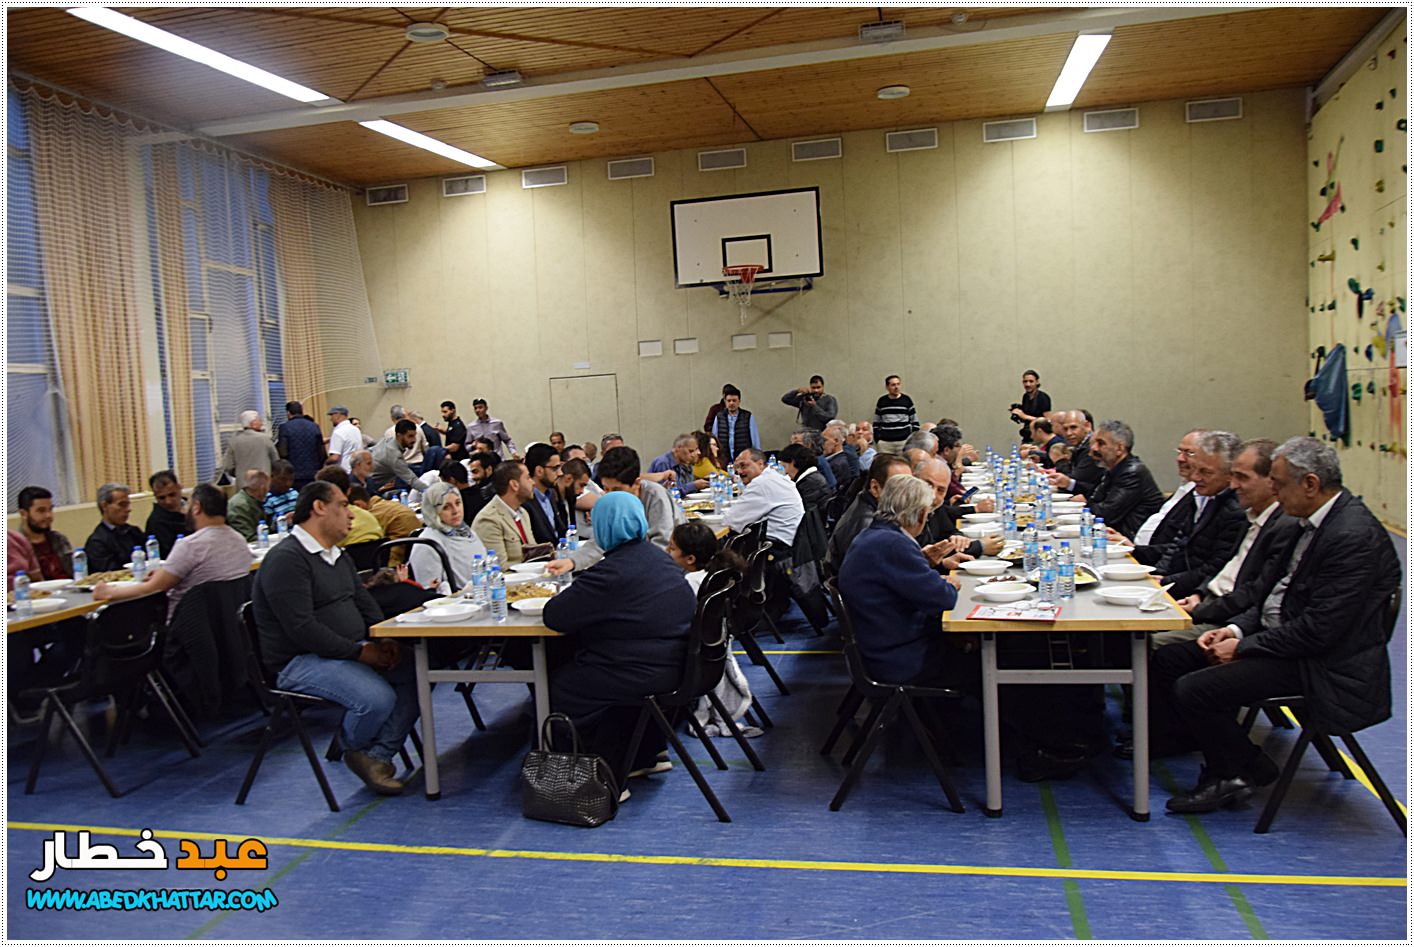 البيت الألماني الفلسطيني-منطقة برلين يقيم مأدبة إفطار جماعي بحضور سفيرة دولة فلسطين في ألمانيا الدكتورة خلود دعيبس